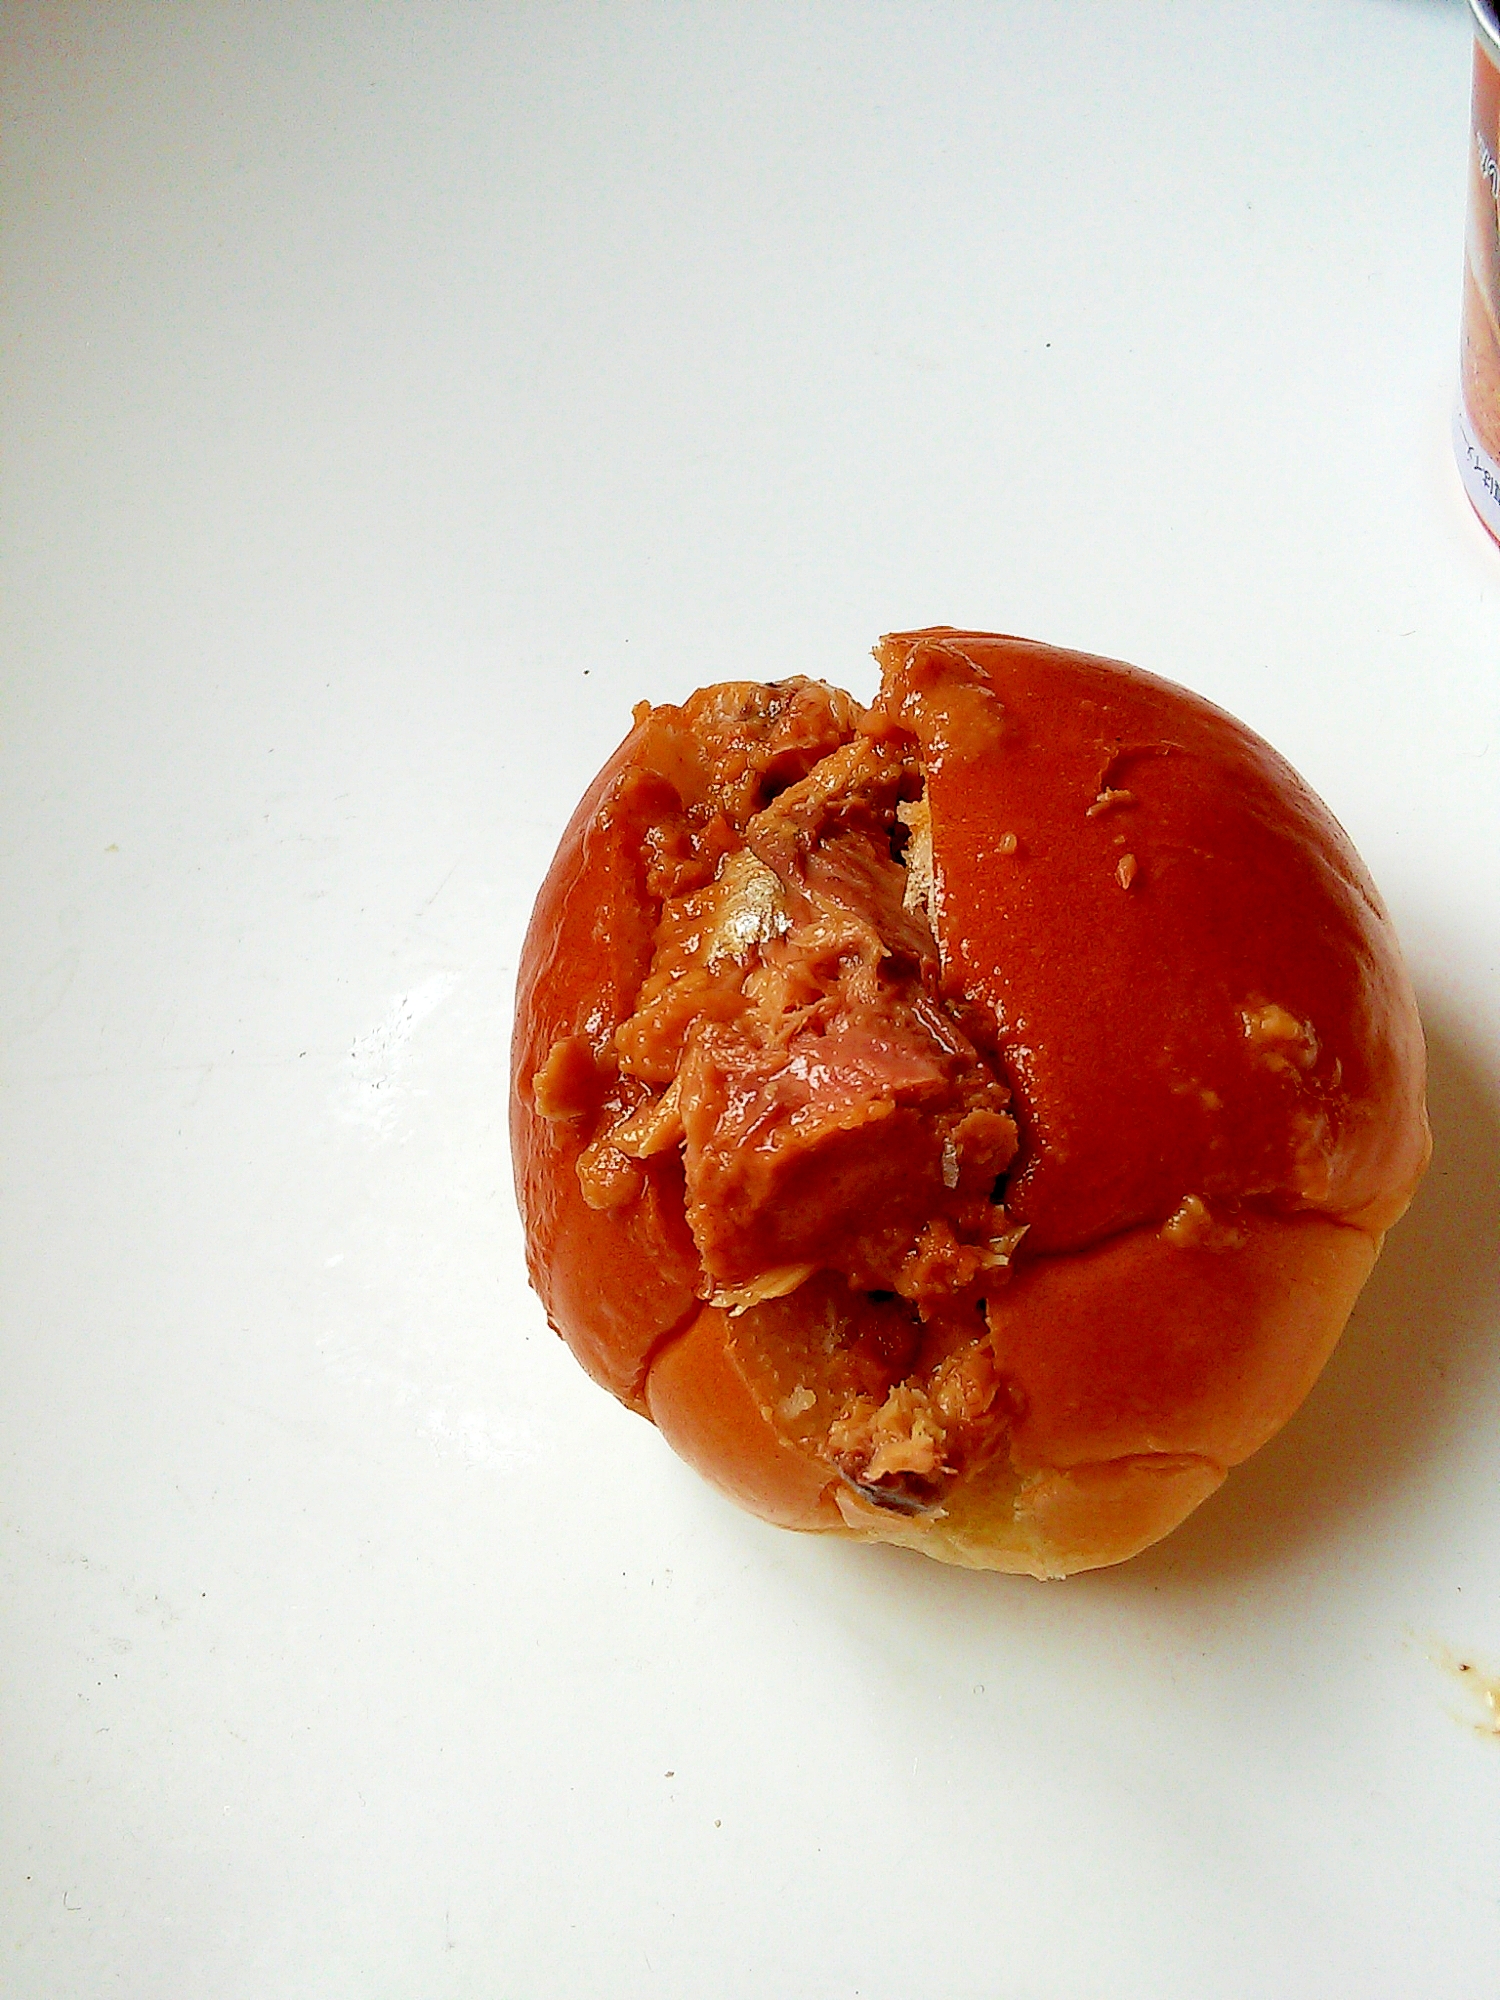 鯖の味噌煮缶のサンドイッチ☆マヨネーズ風味